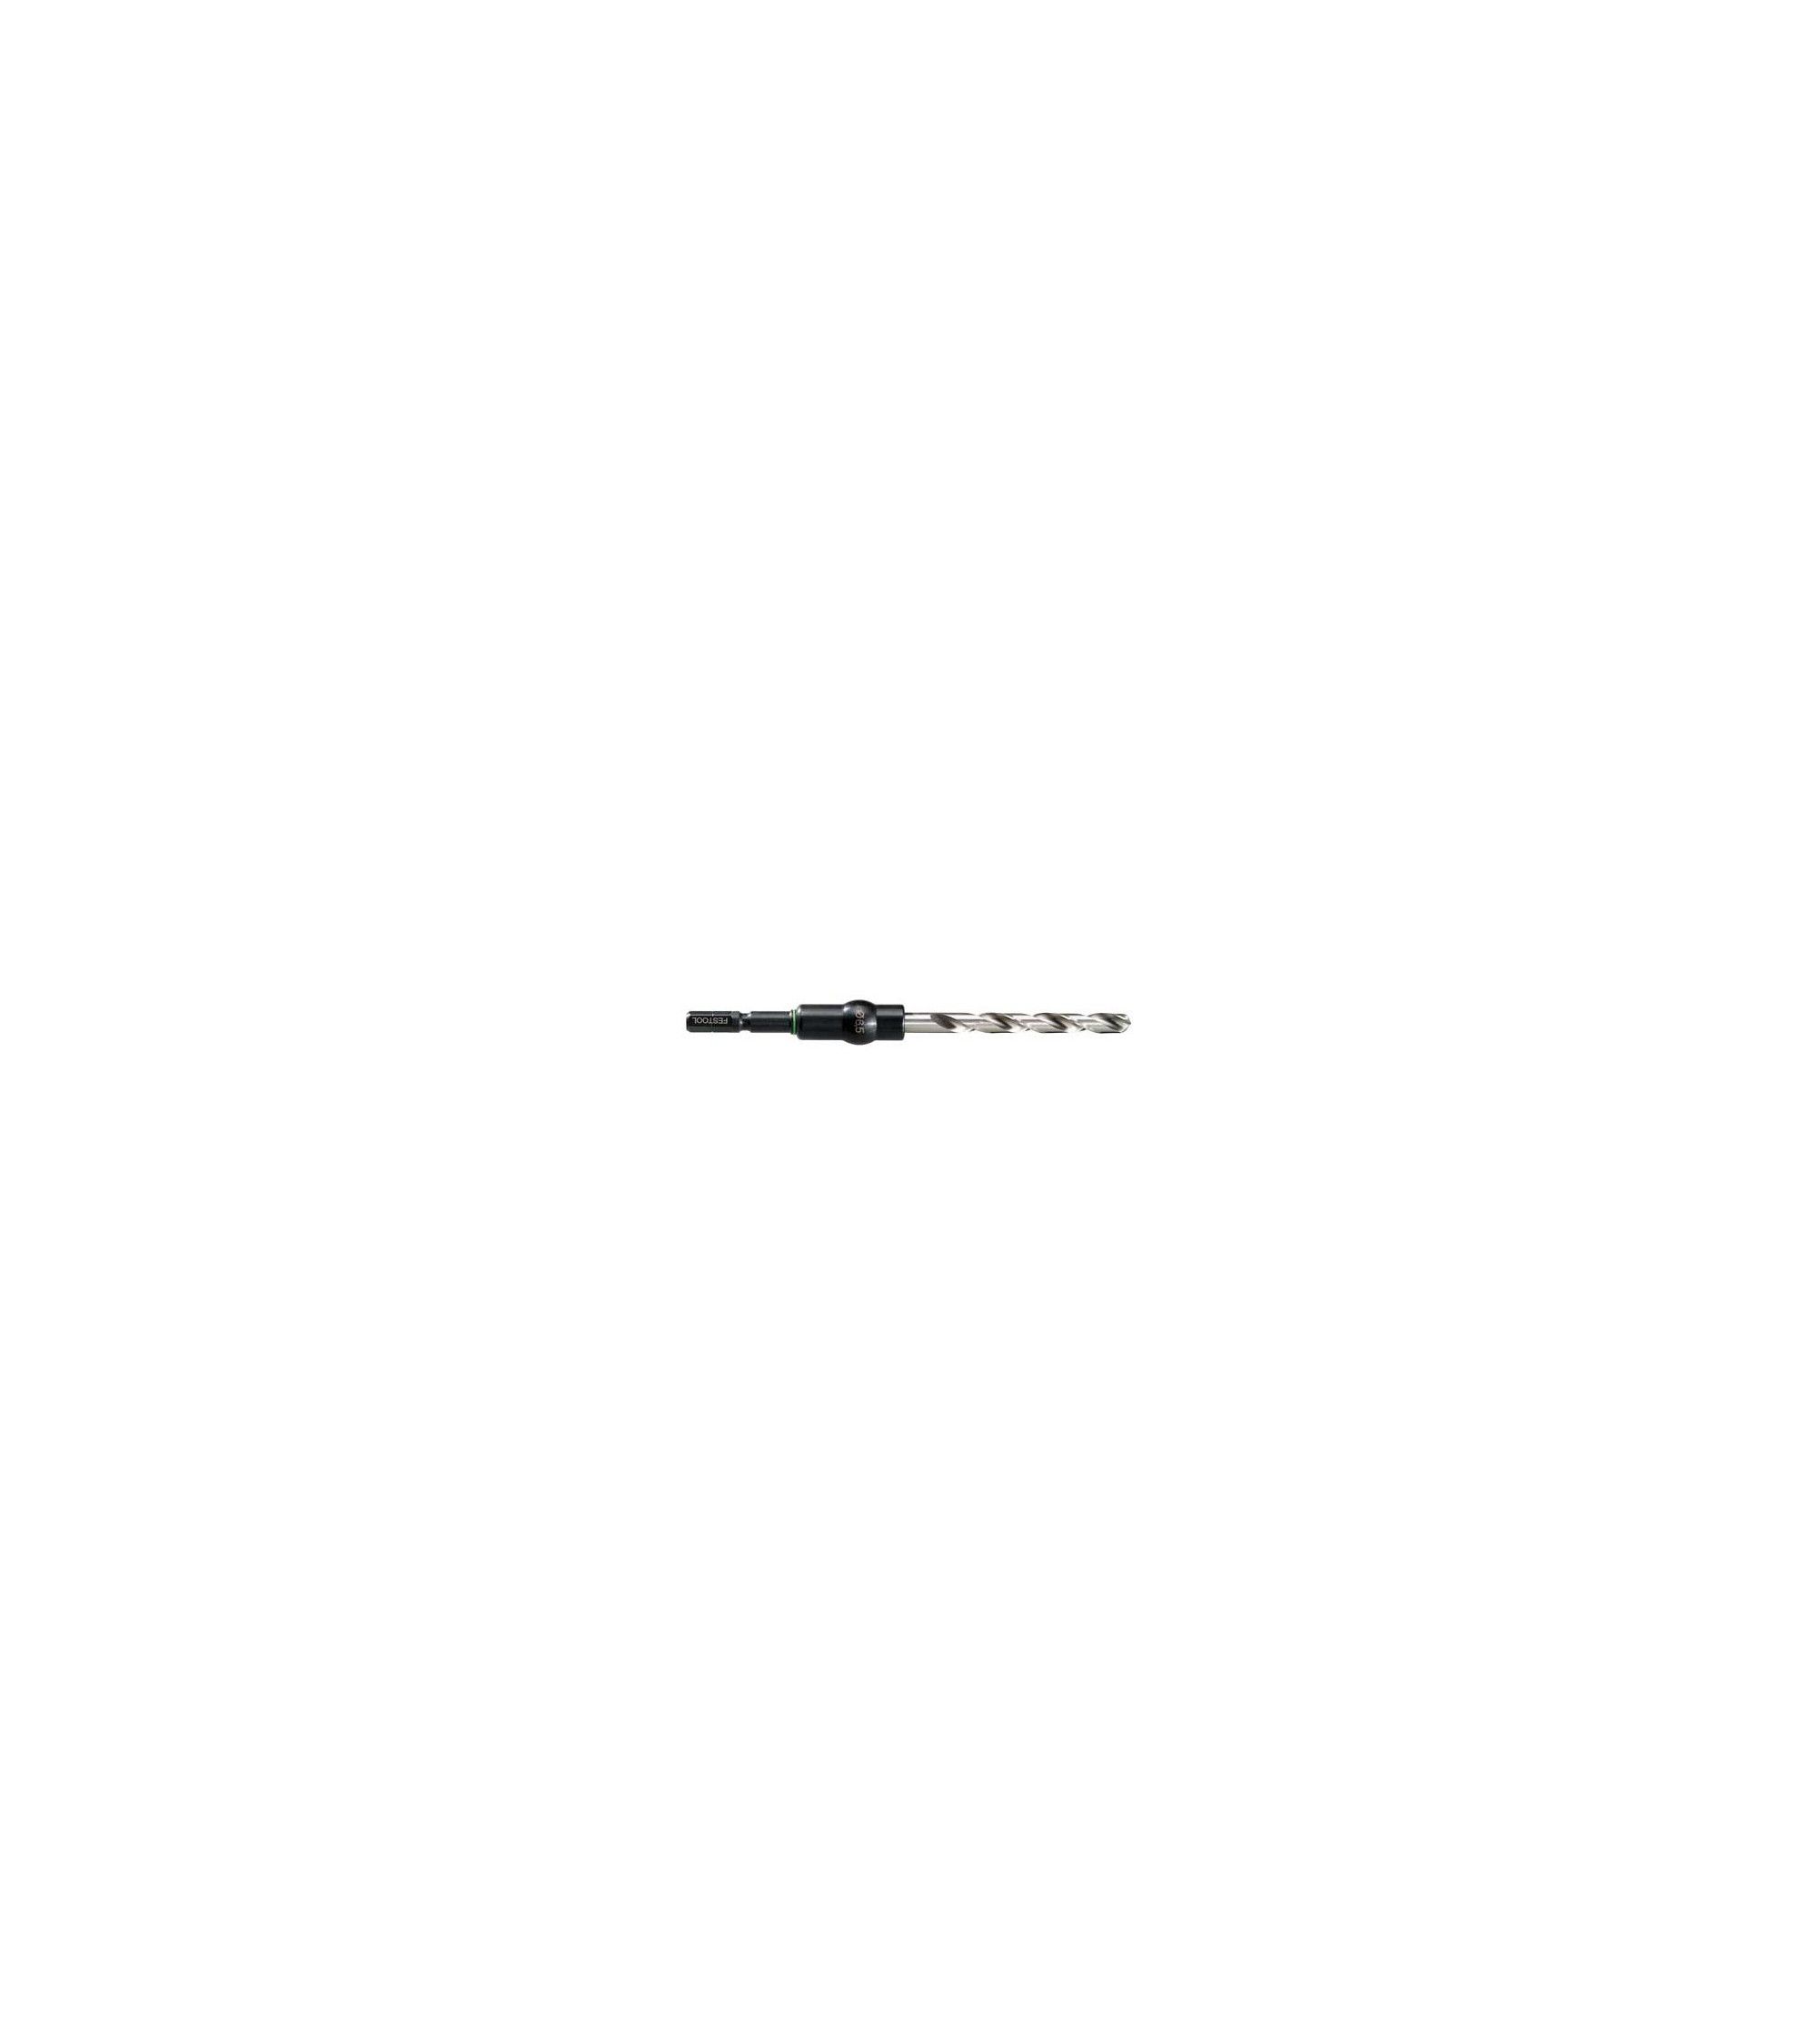 Festool Twist drill bit HSS D 8,0/75 CE/M-Set, KAINA BE PVM: 23.139, KODAS: 495308 | 001